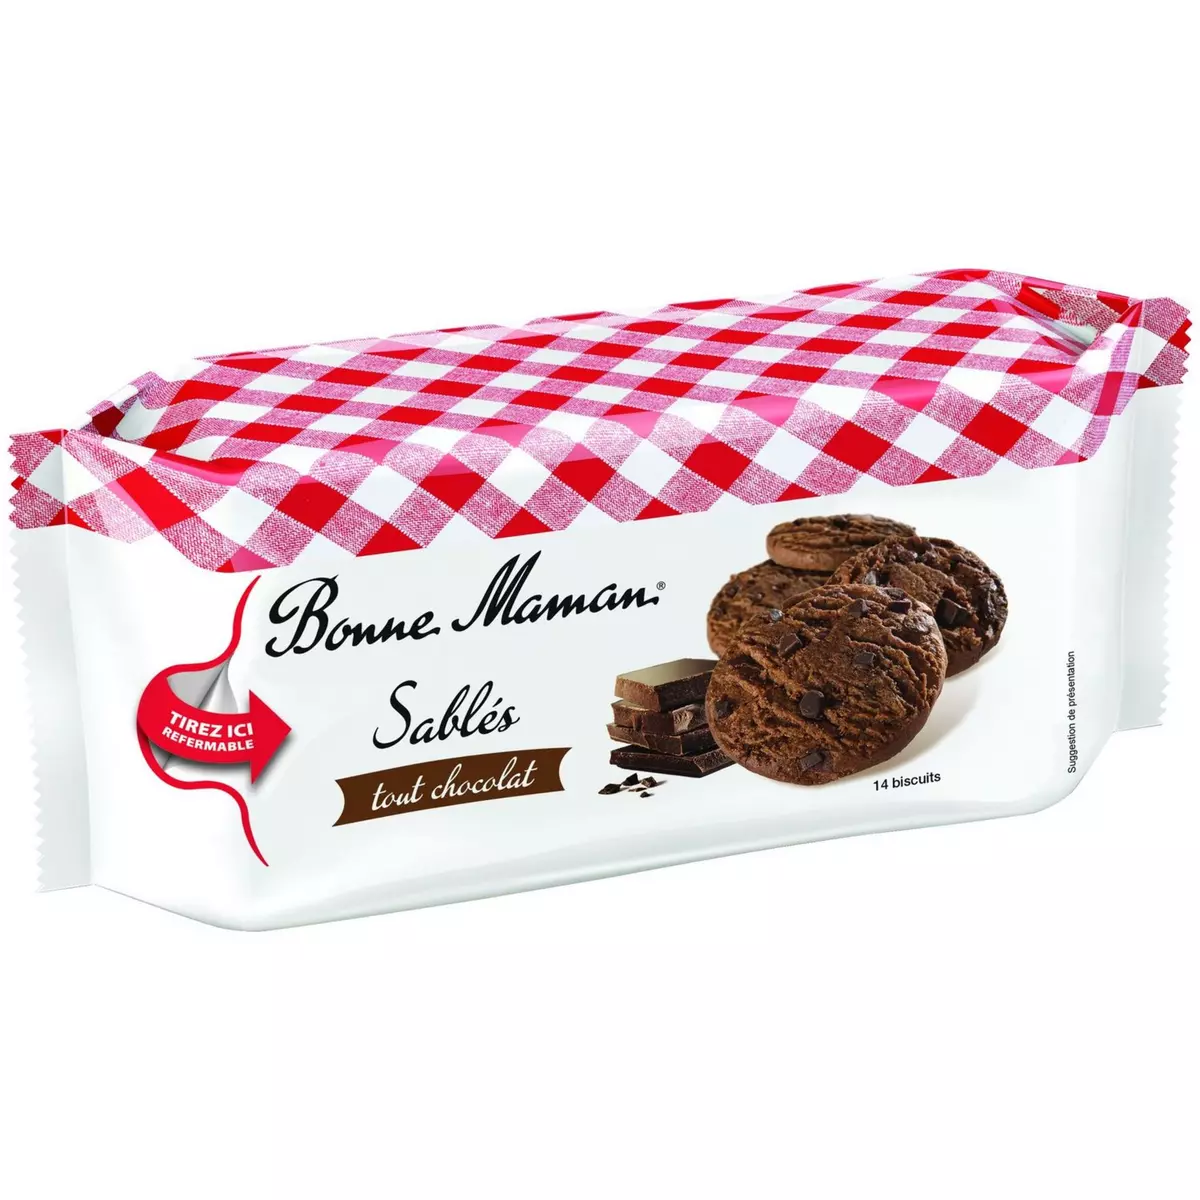 BONNE MAMAN Biscuits sablés tout chocolat 14 biscuits 150g